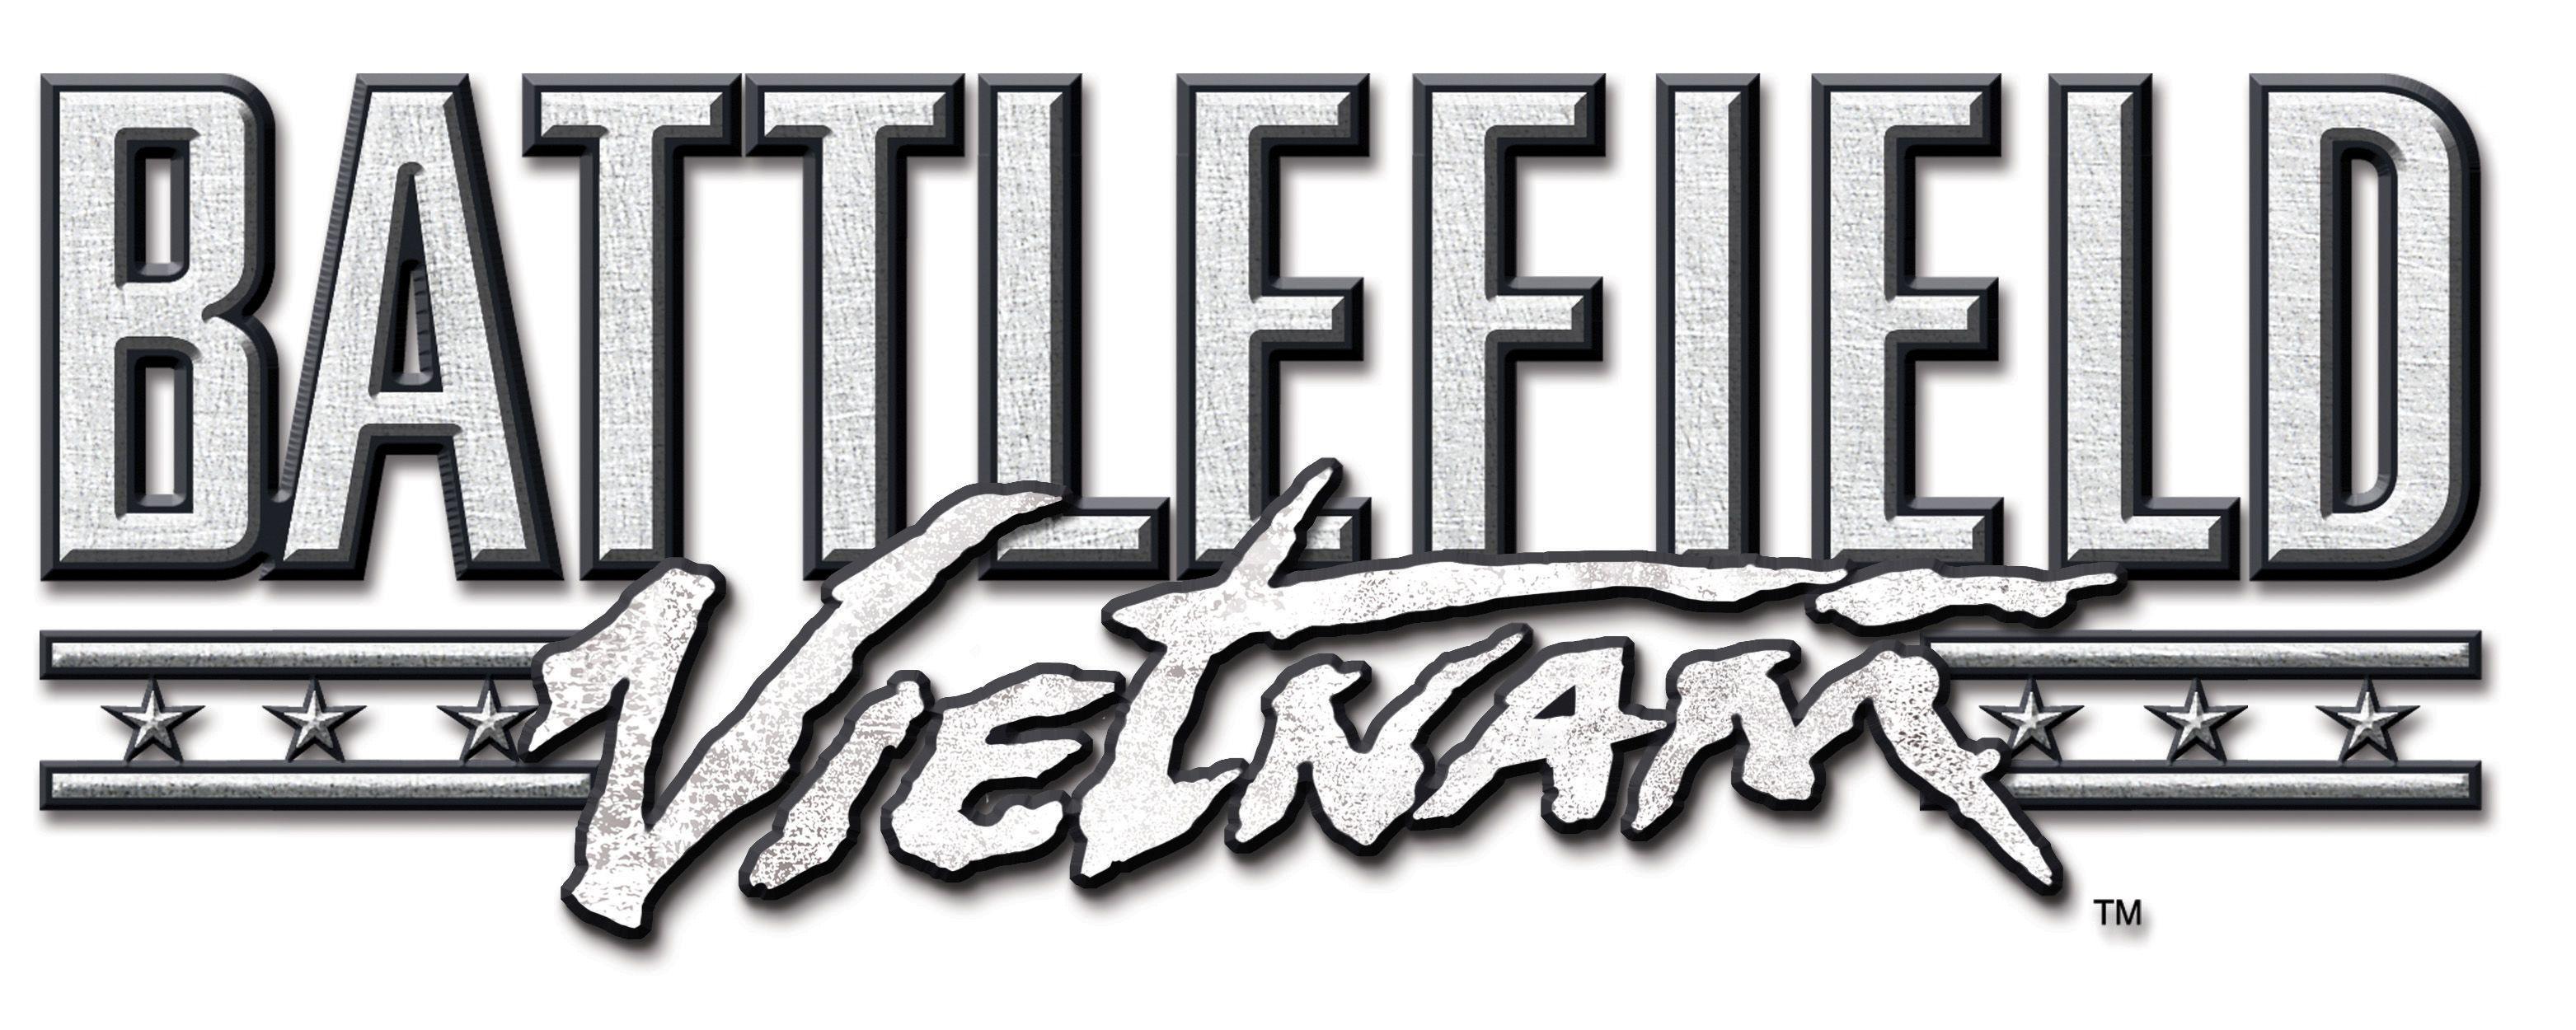 Battlefield Logo - File:Battlefield Vietnam logo.jpg - Wikimedia Commons